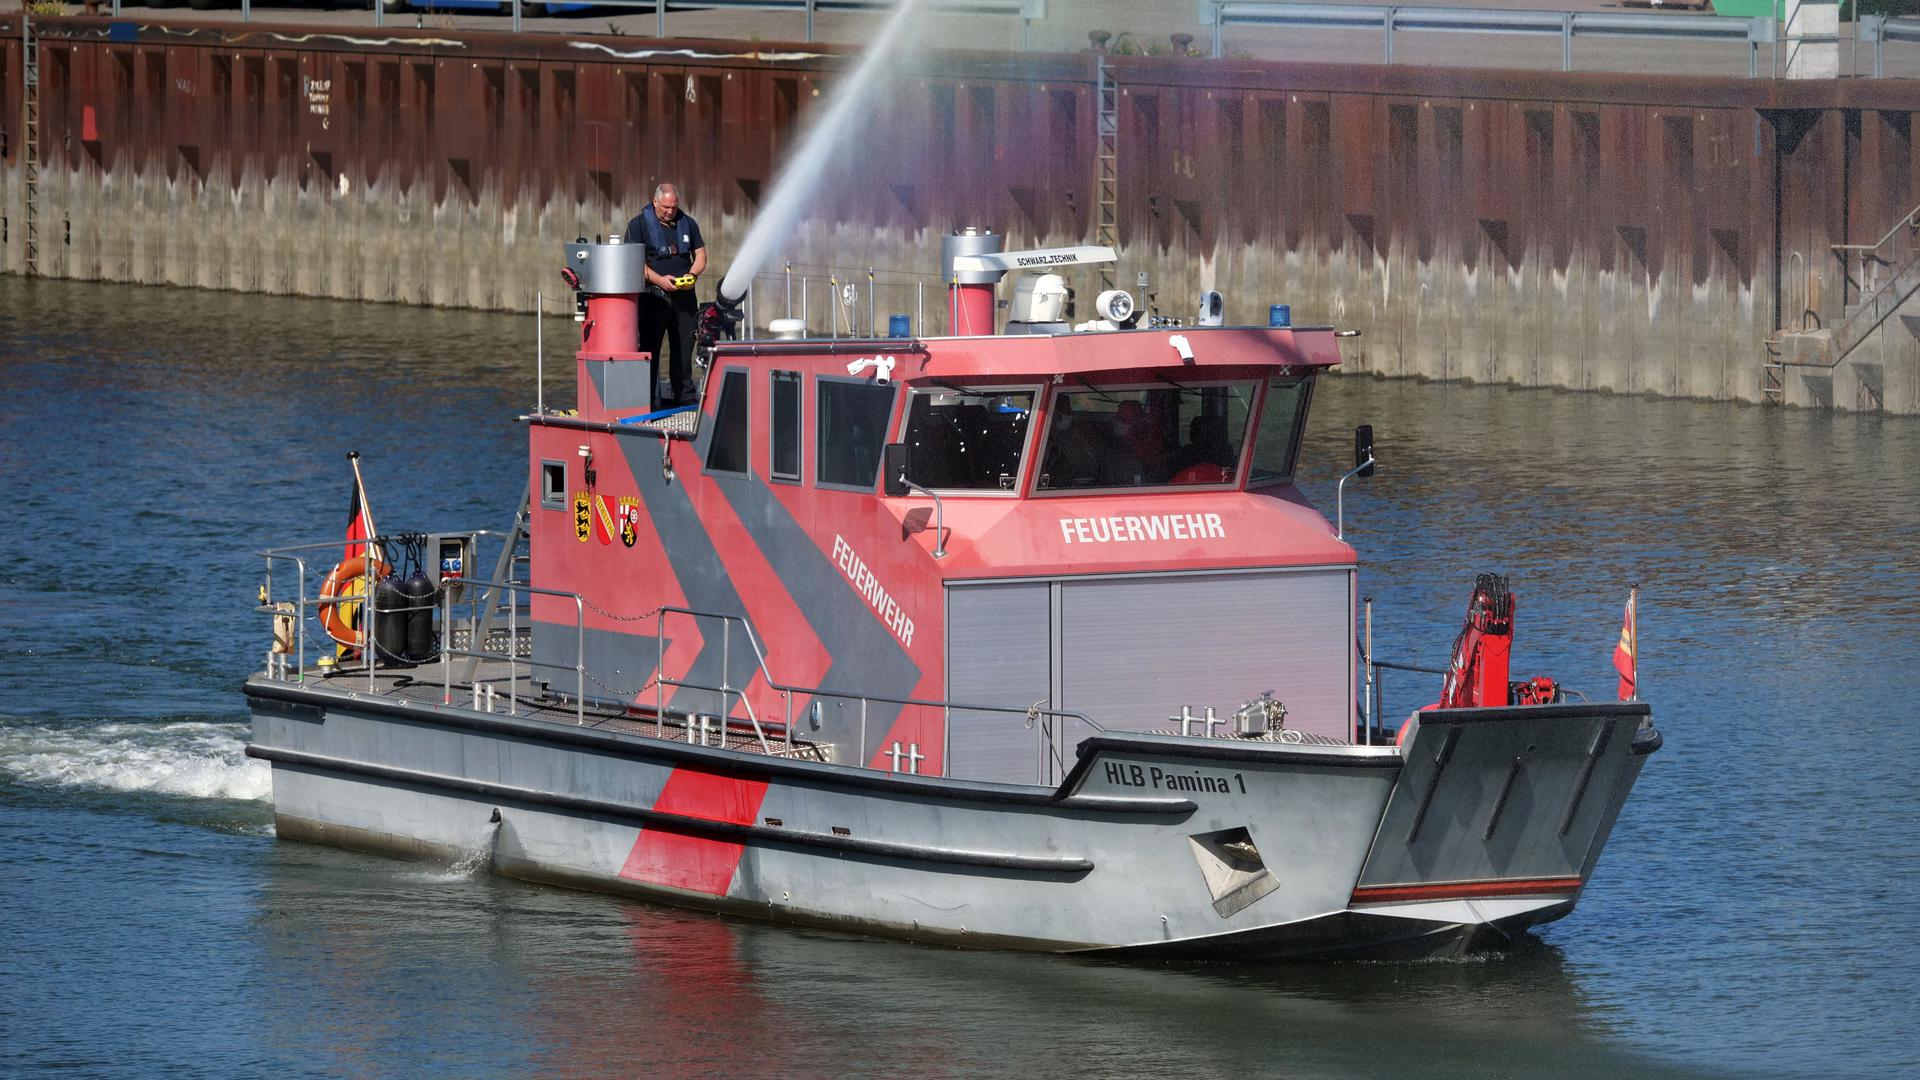 Feuerwehrboot Rheinhafen Karlsruhe
Foto Peter Sandbiller